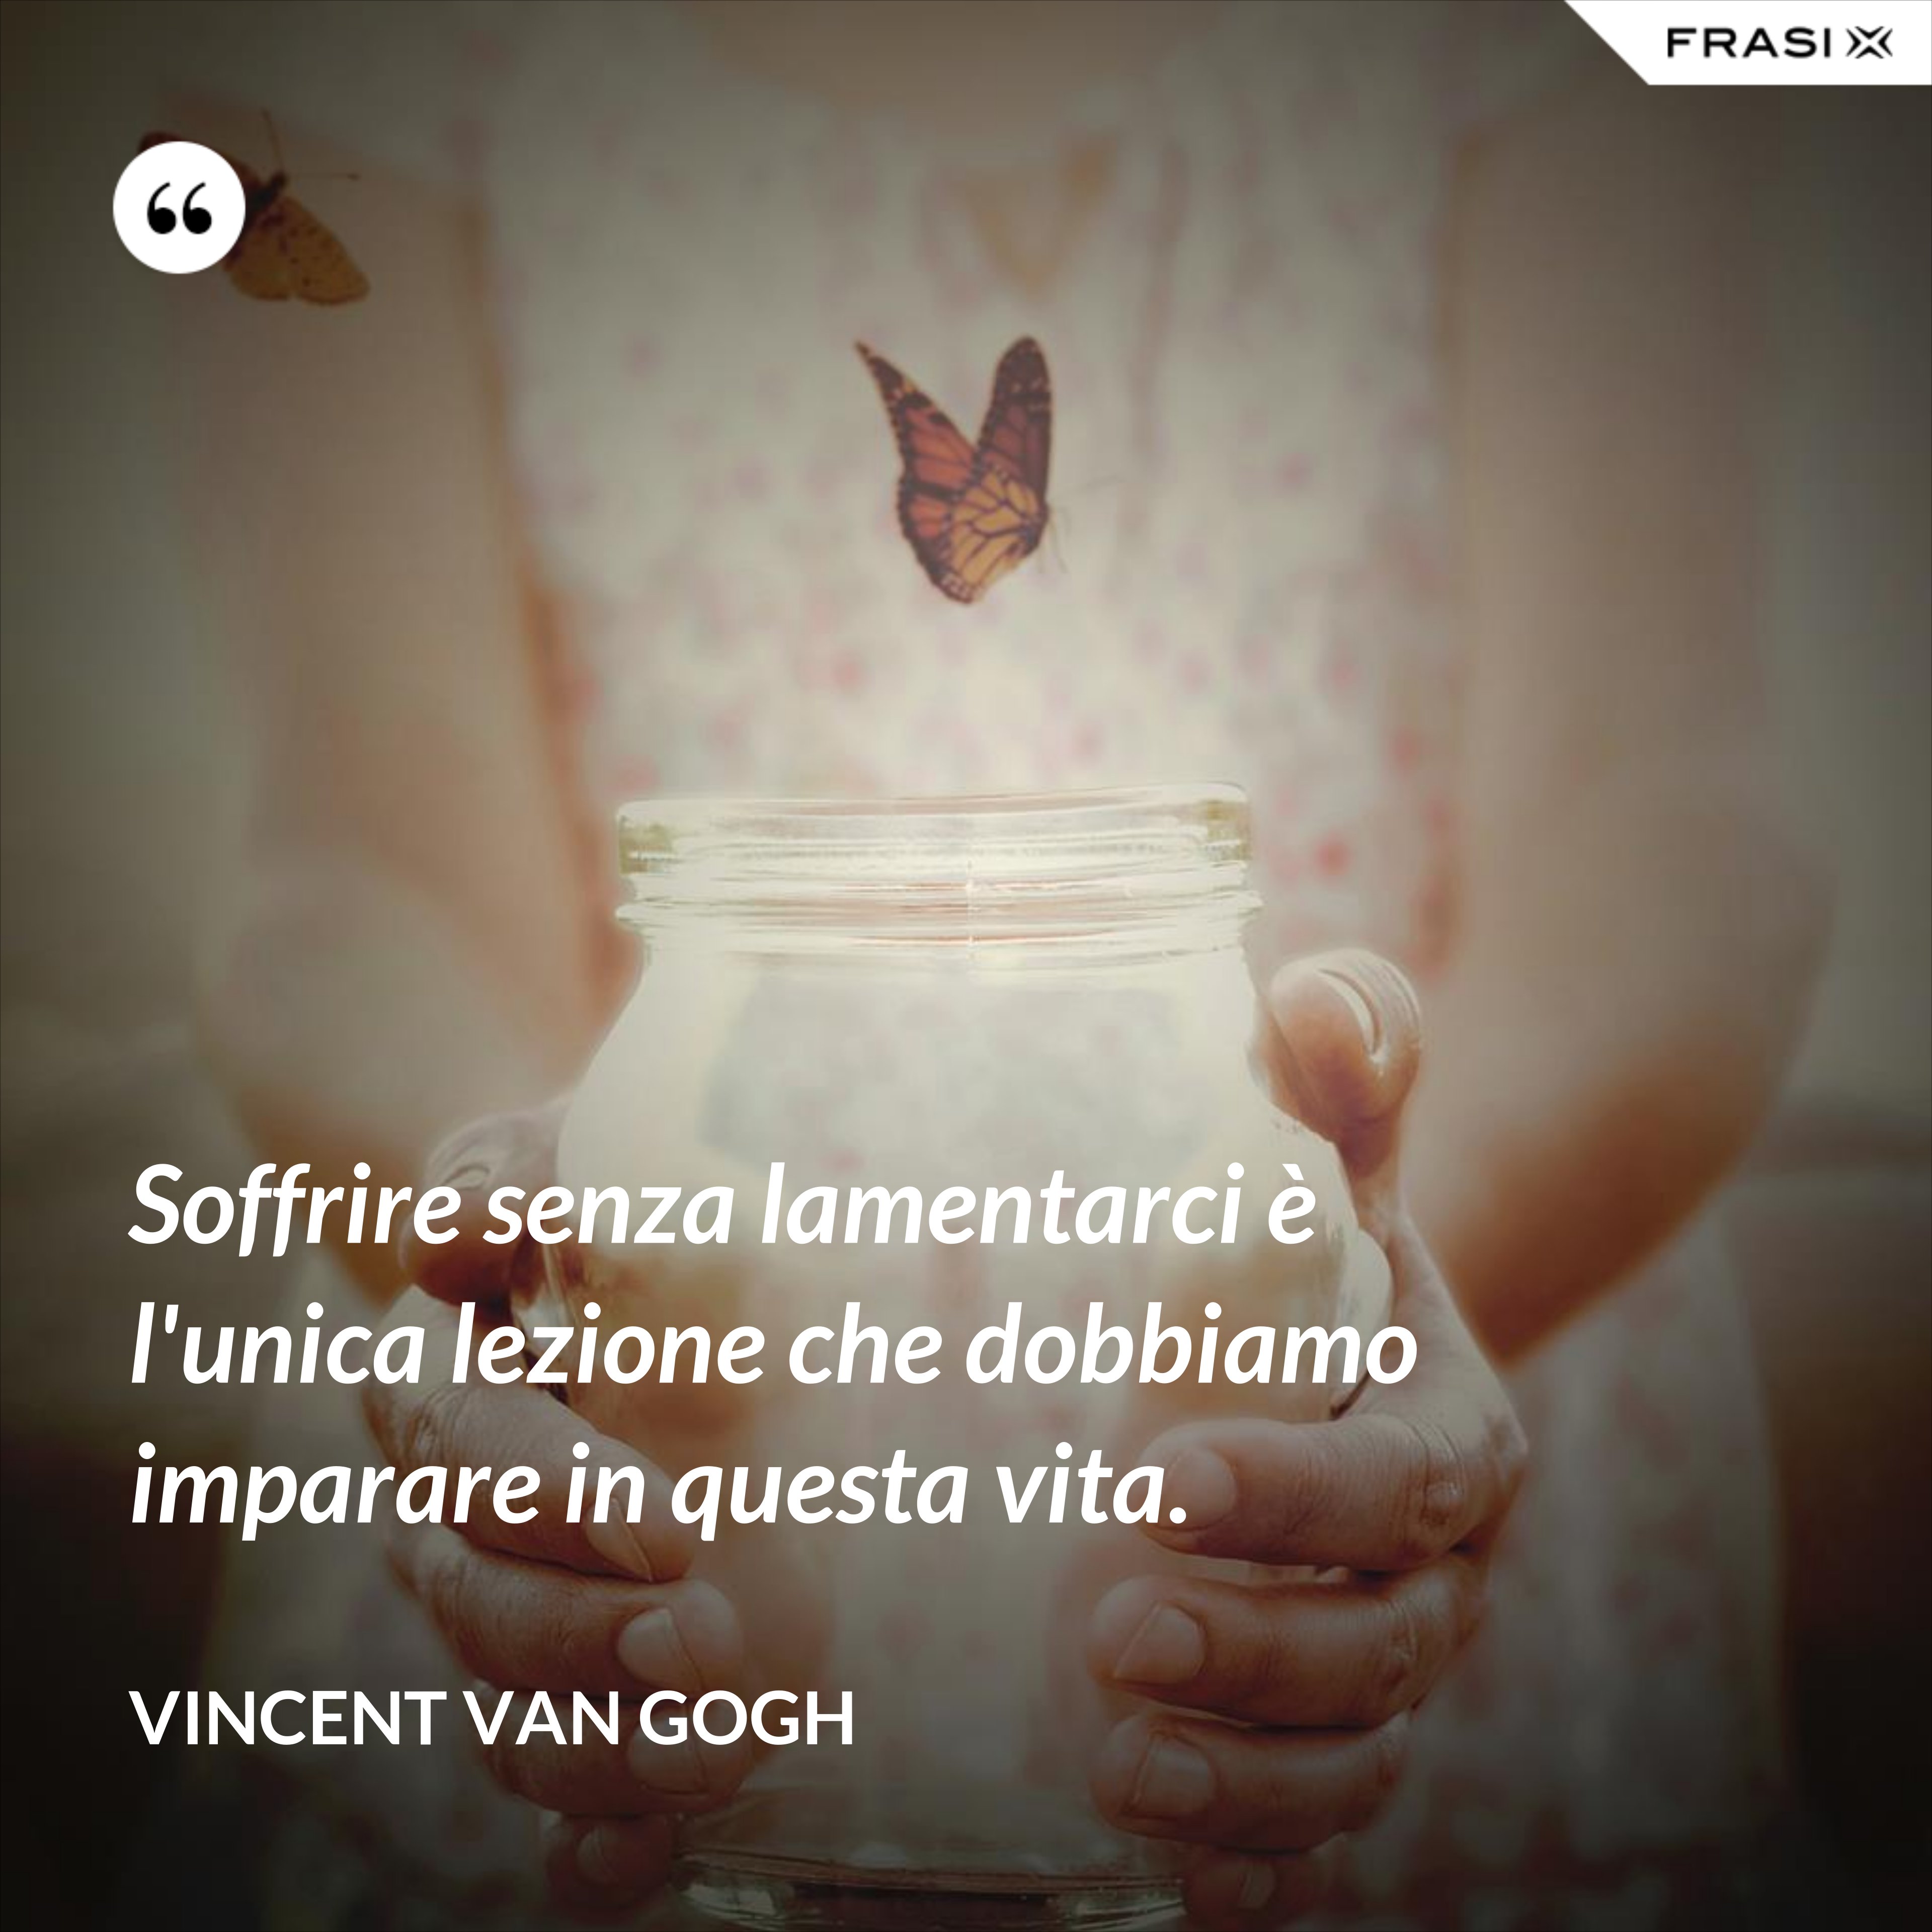 Soffrire senza lamentarci è l'unica lezione che dobbiamo imparare in questa vita. - Vincent Van Gogh